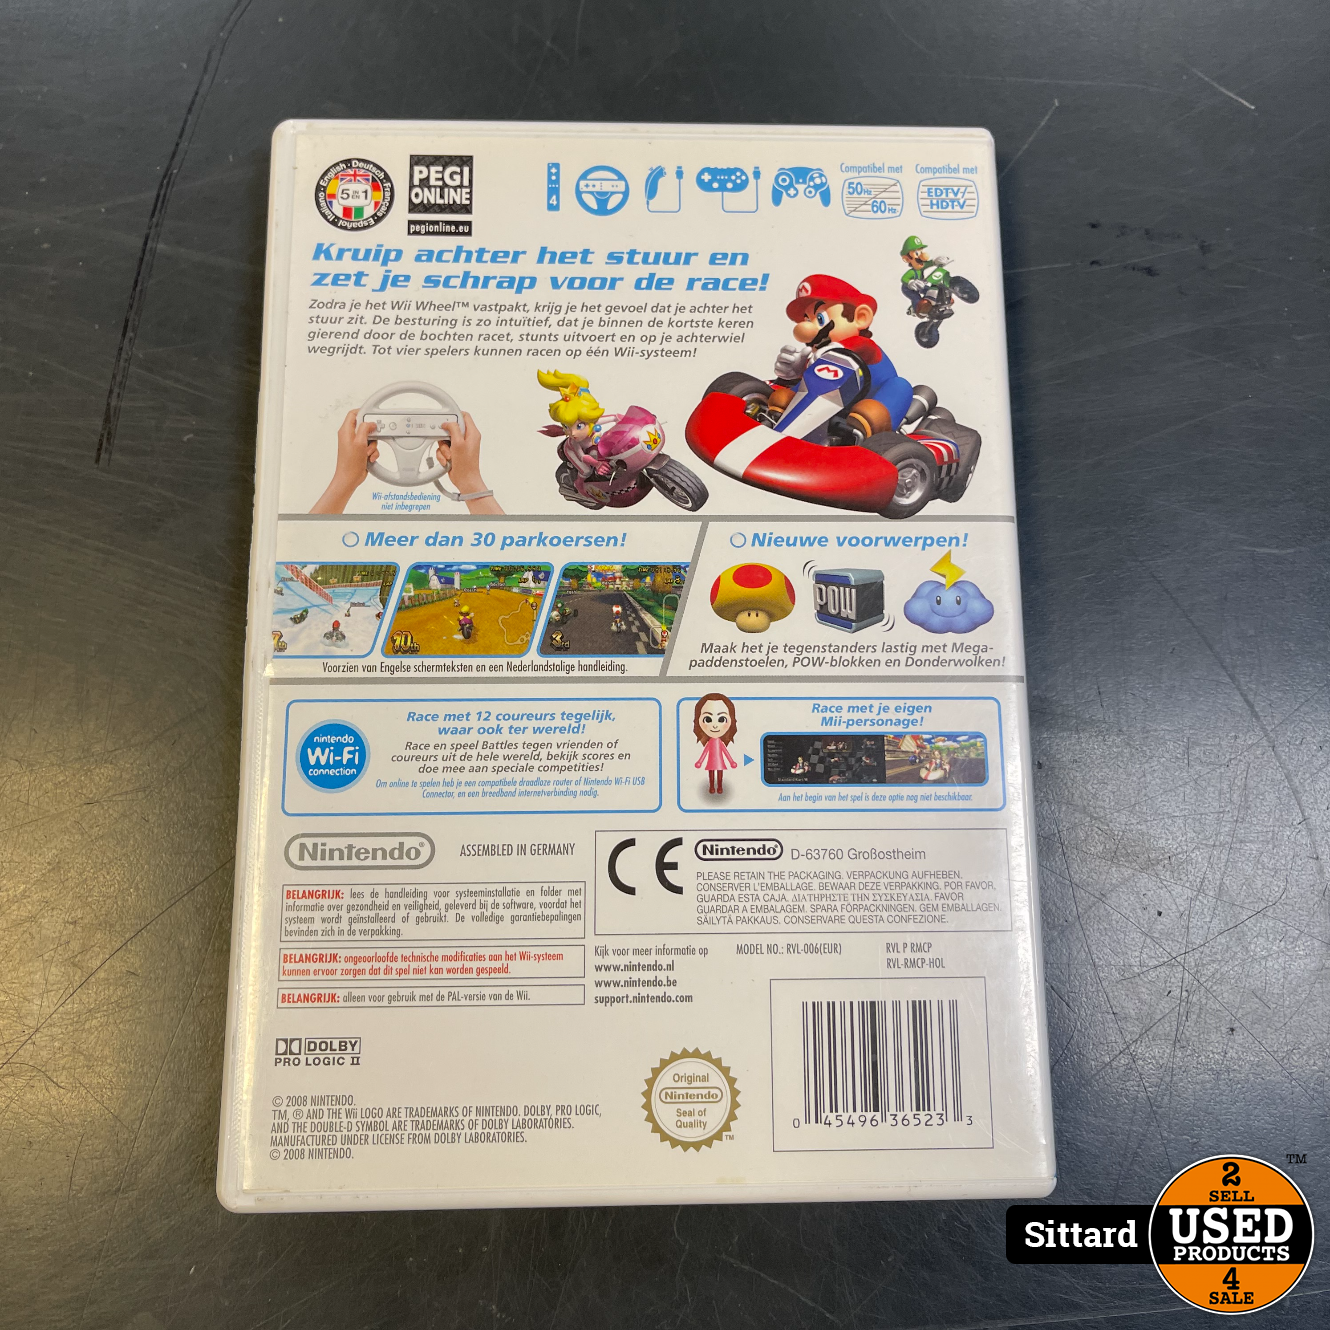 Verdwijnen Door beeld Mario Kart, Wii, In nette staat - Used Products Sittard